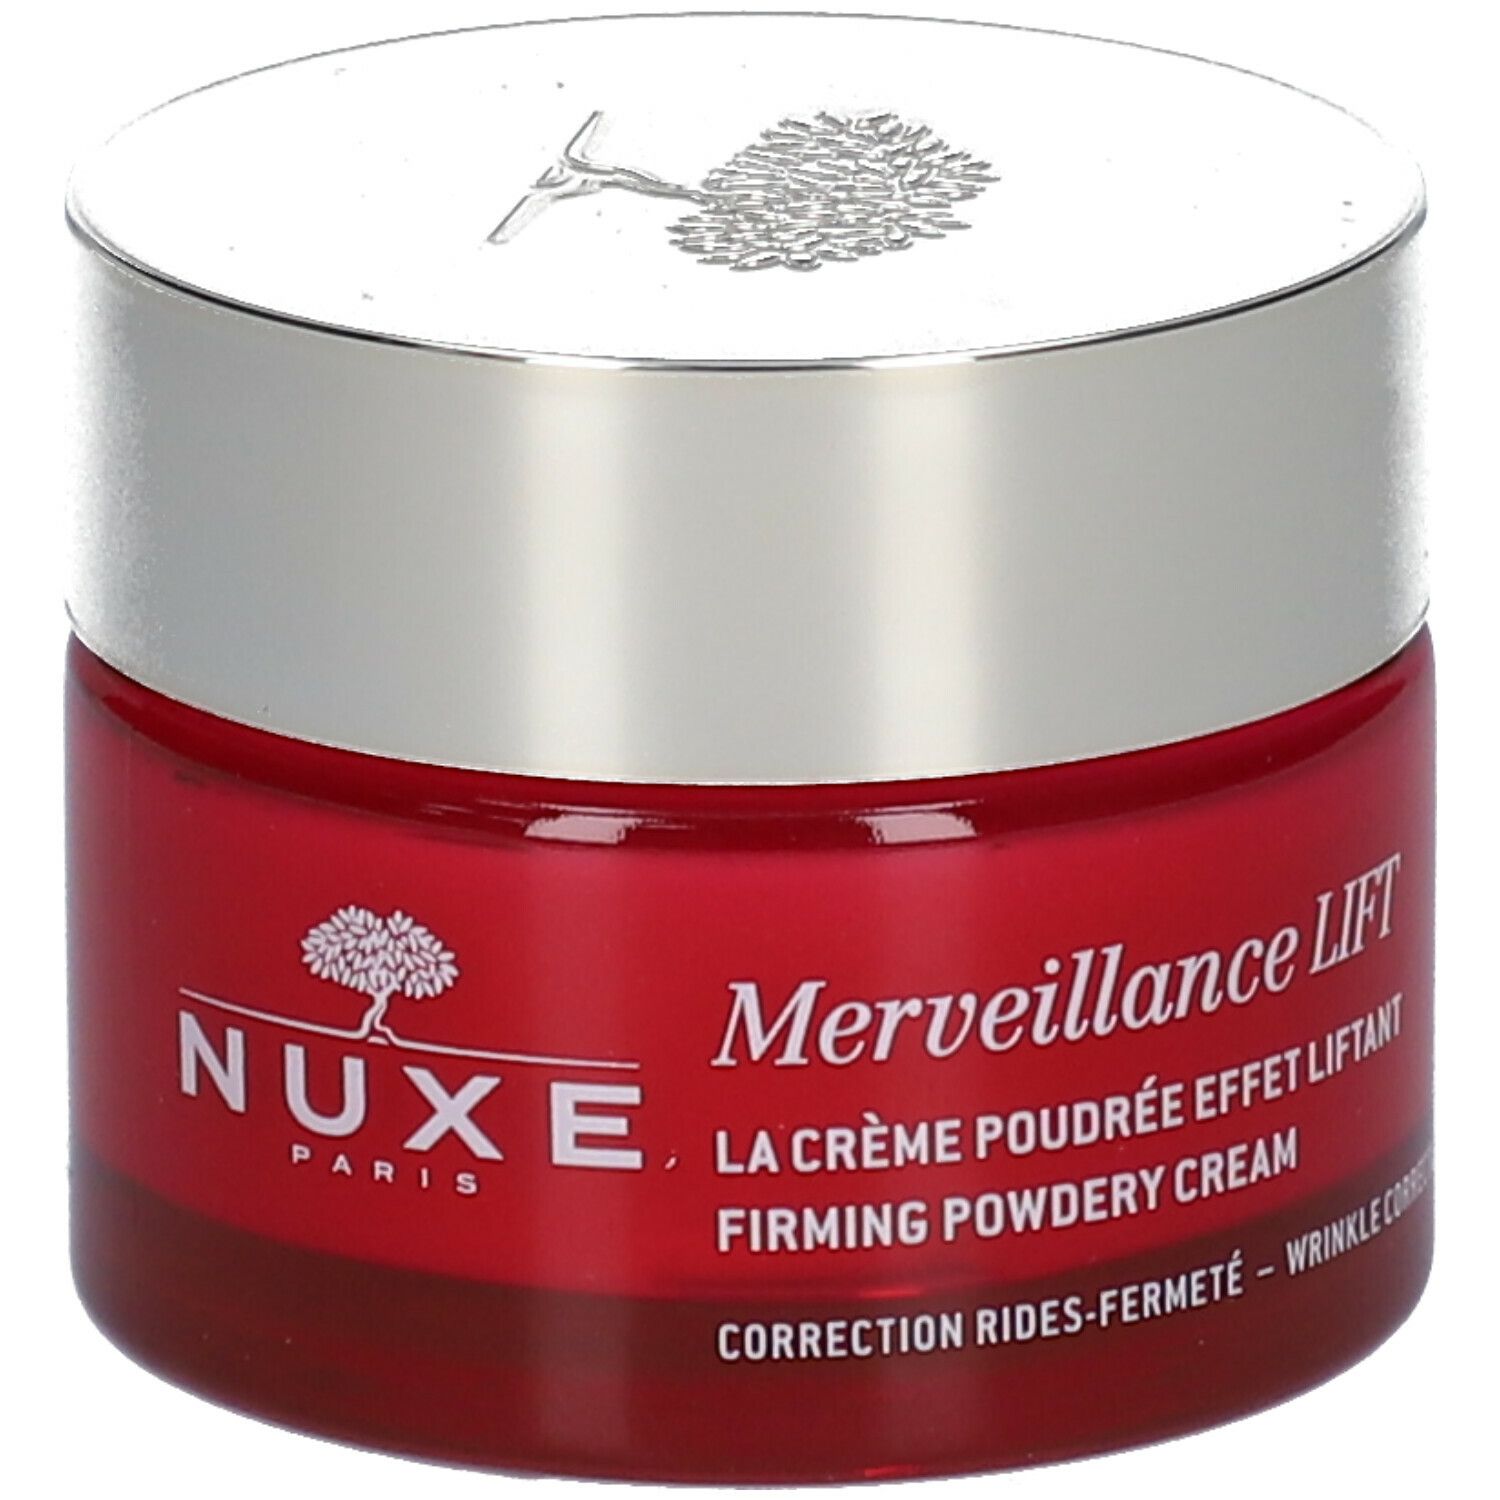 Nuxe Merveillance Lift La Crème Poudrée Effet Liftant